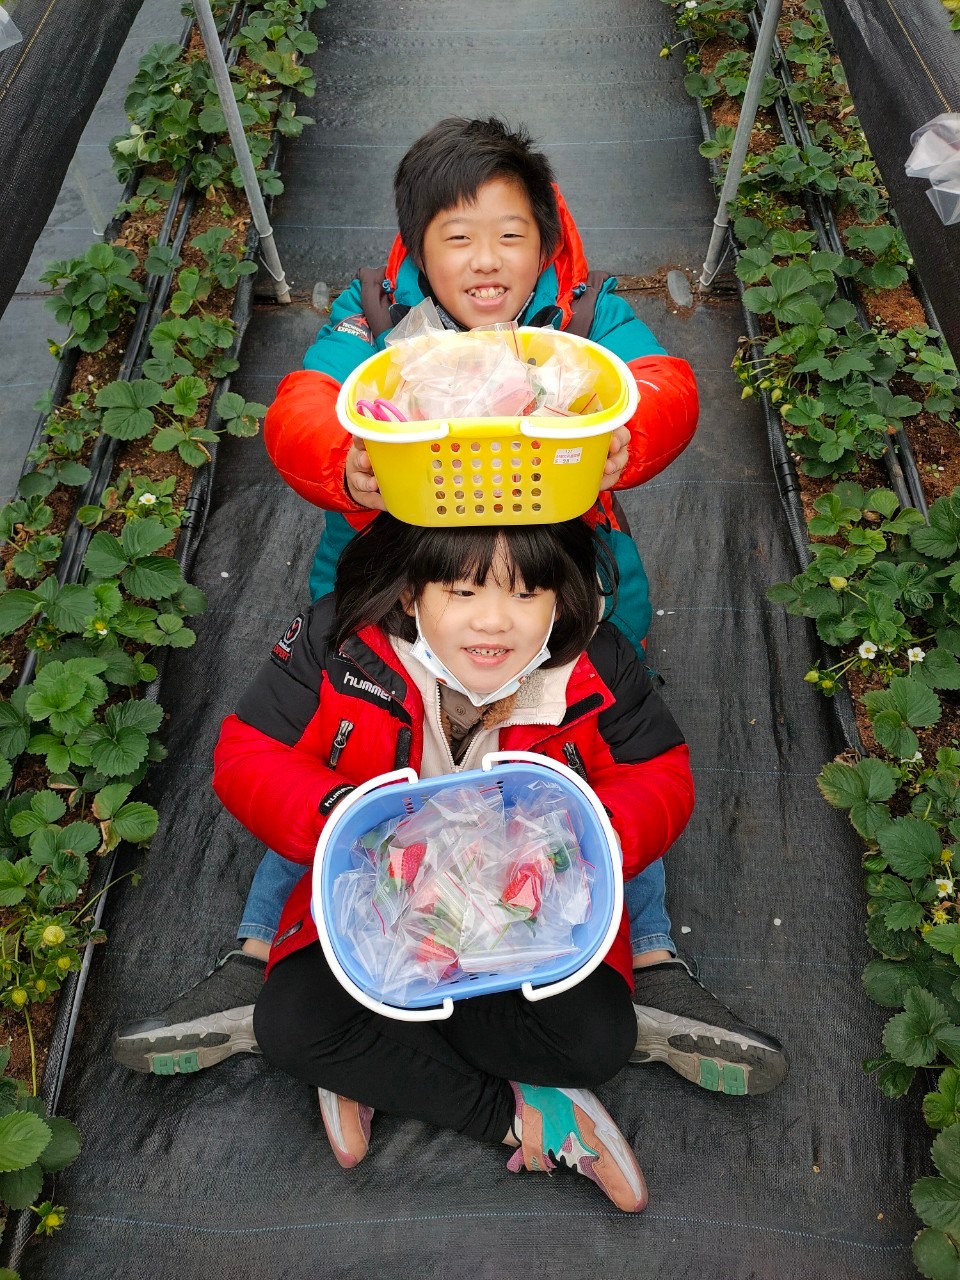 八角店高架草莓園,大竹景點,美姬草莓,蘆竹採草莓,親子採草莓